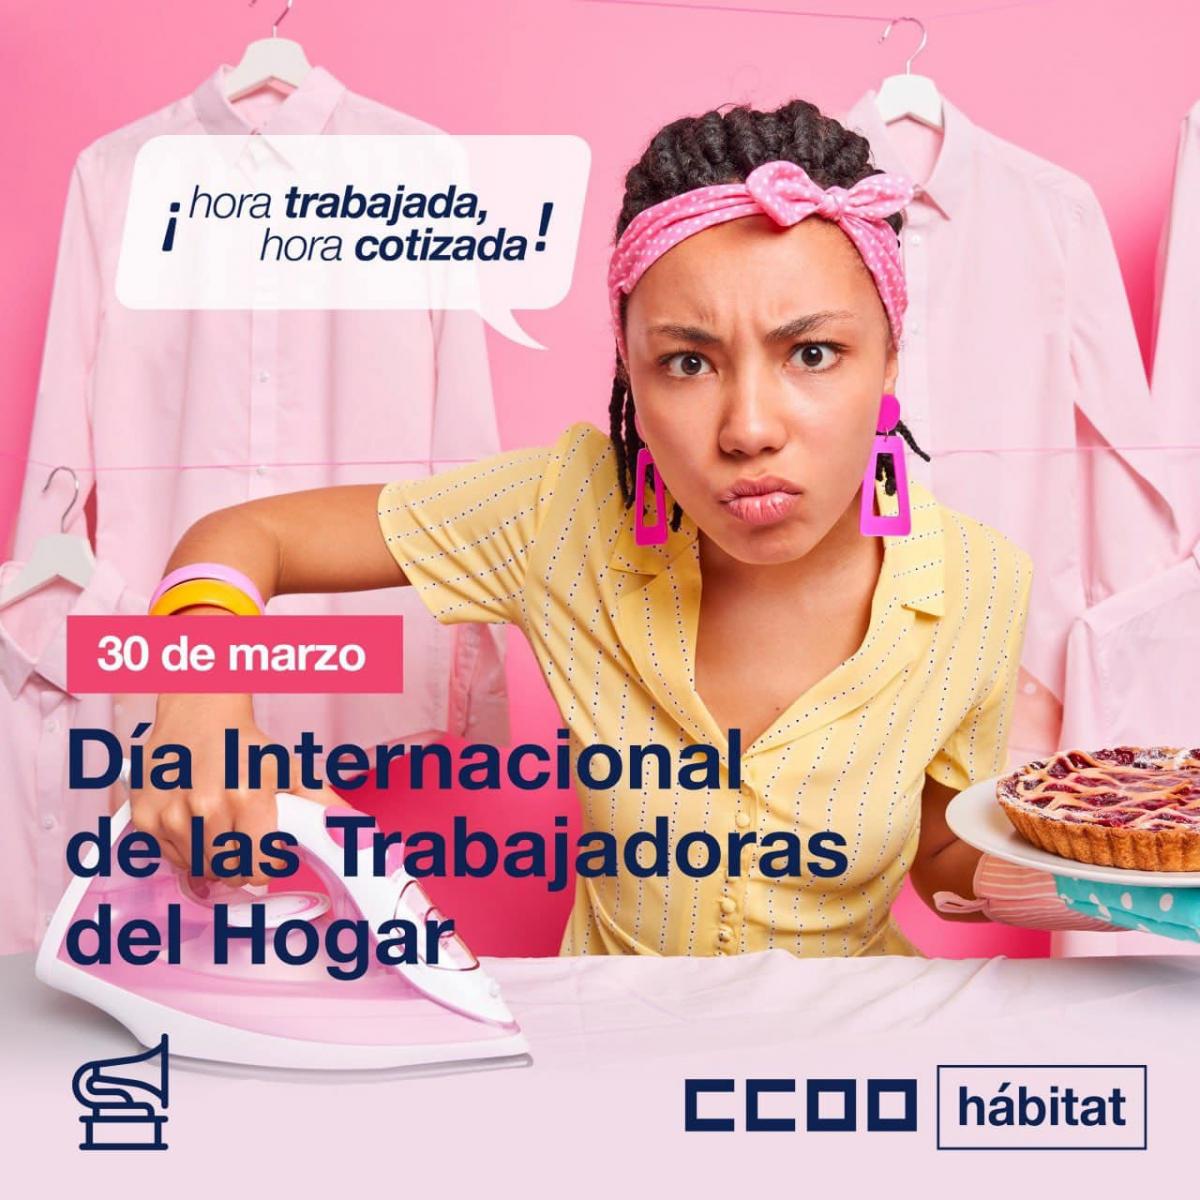 Día Internacional de las Trabajadoras del Hogar.